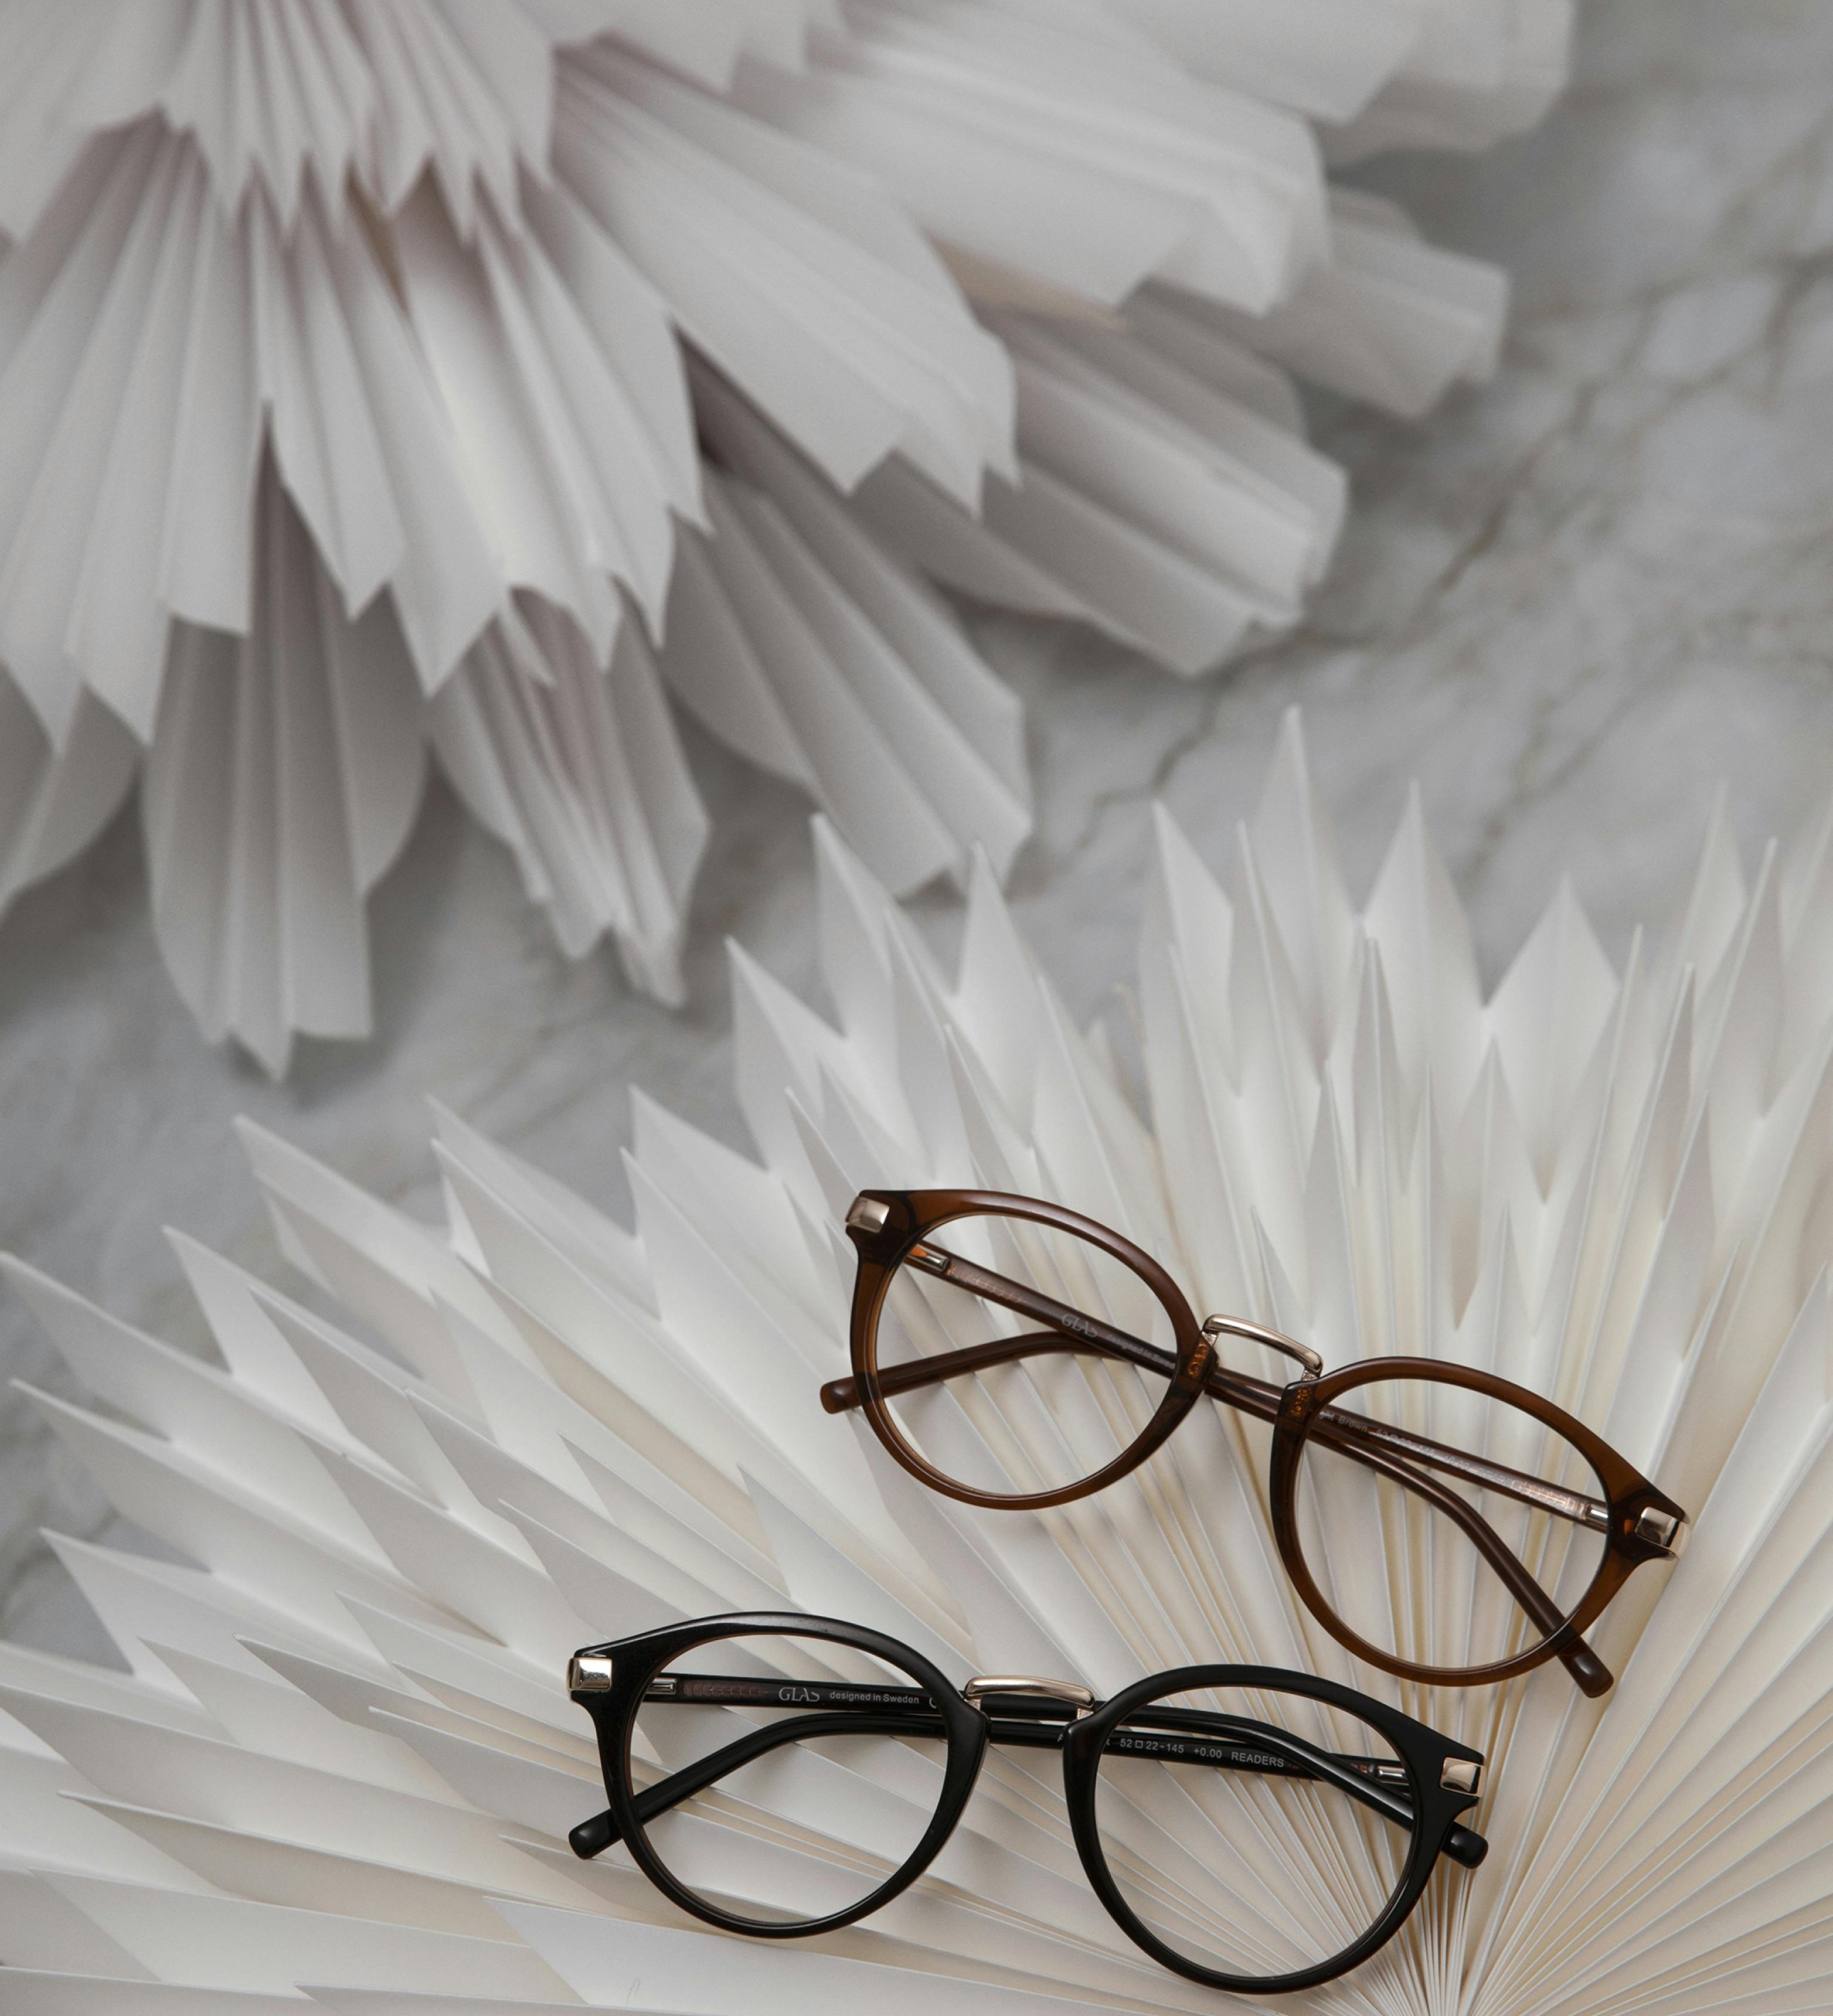 Stylish reading glasses 